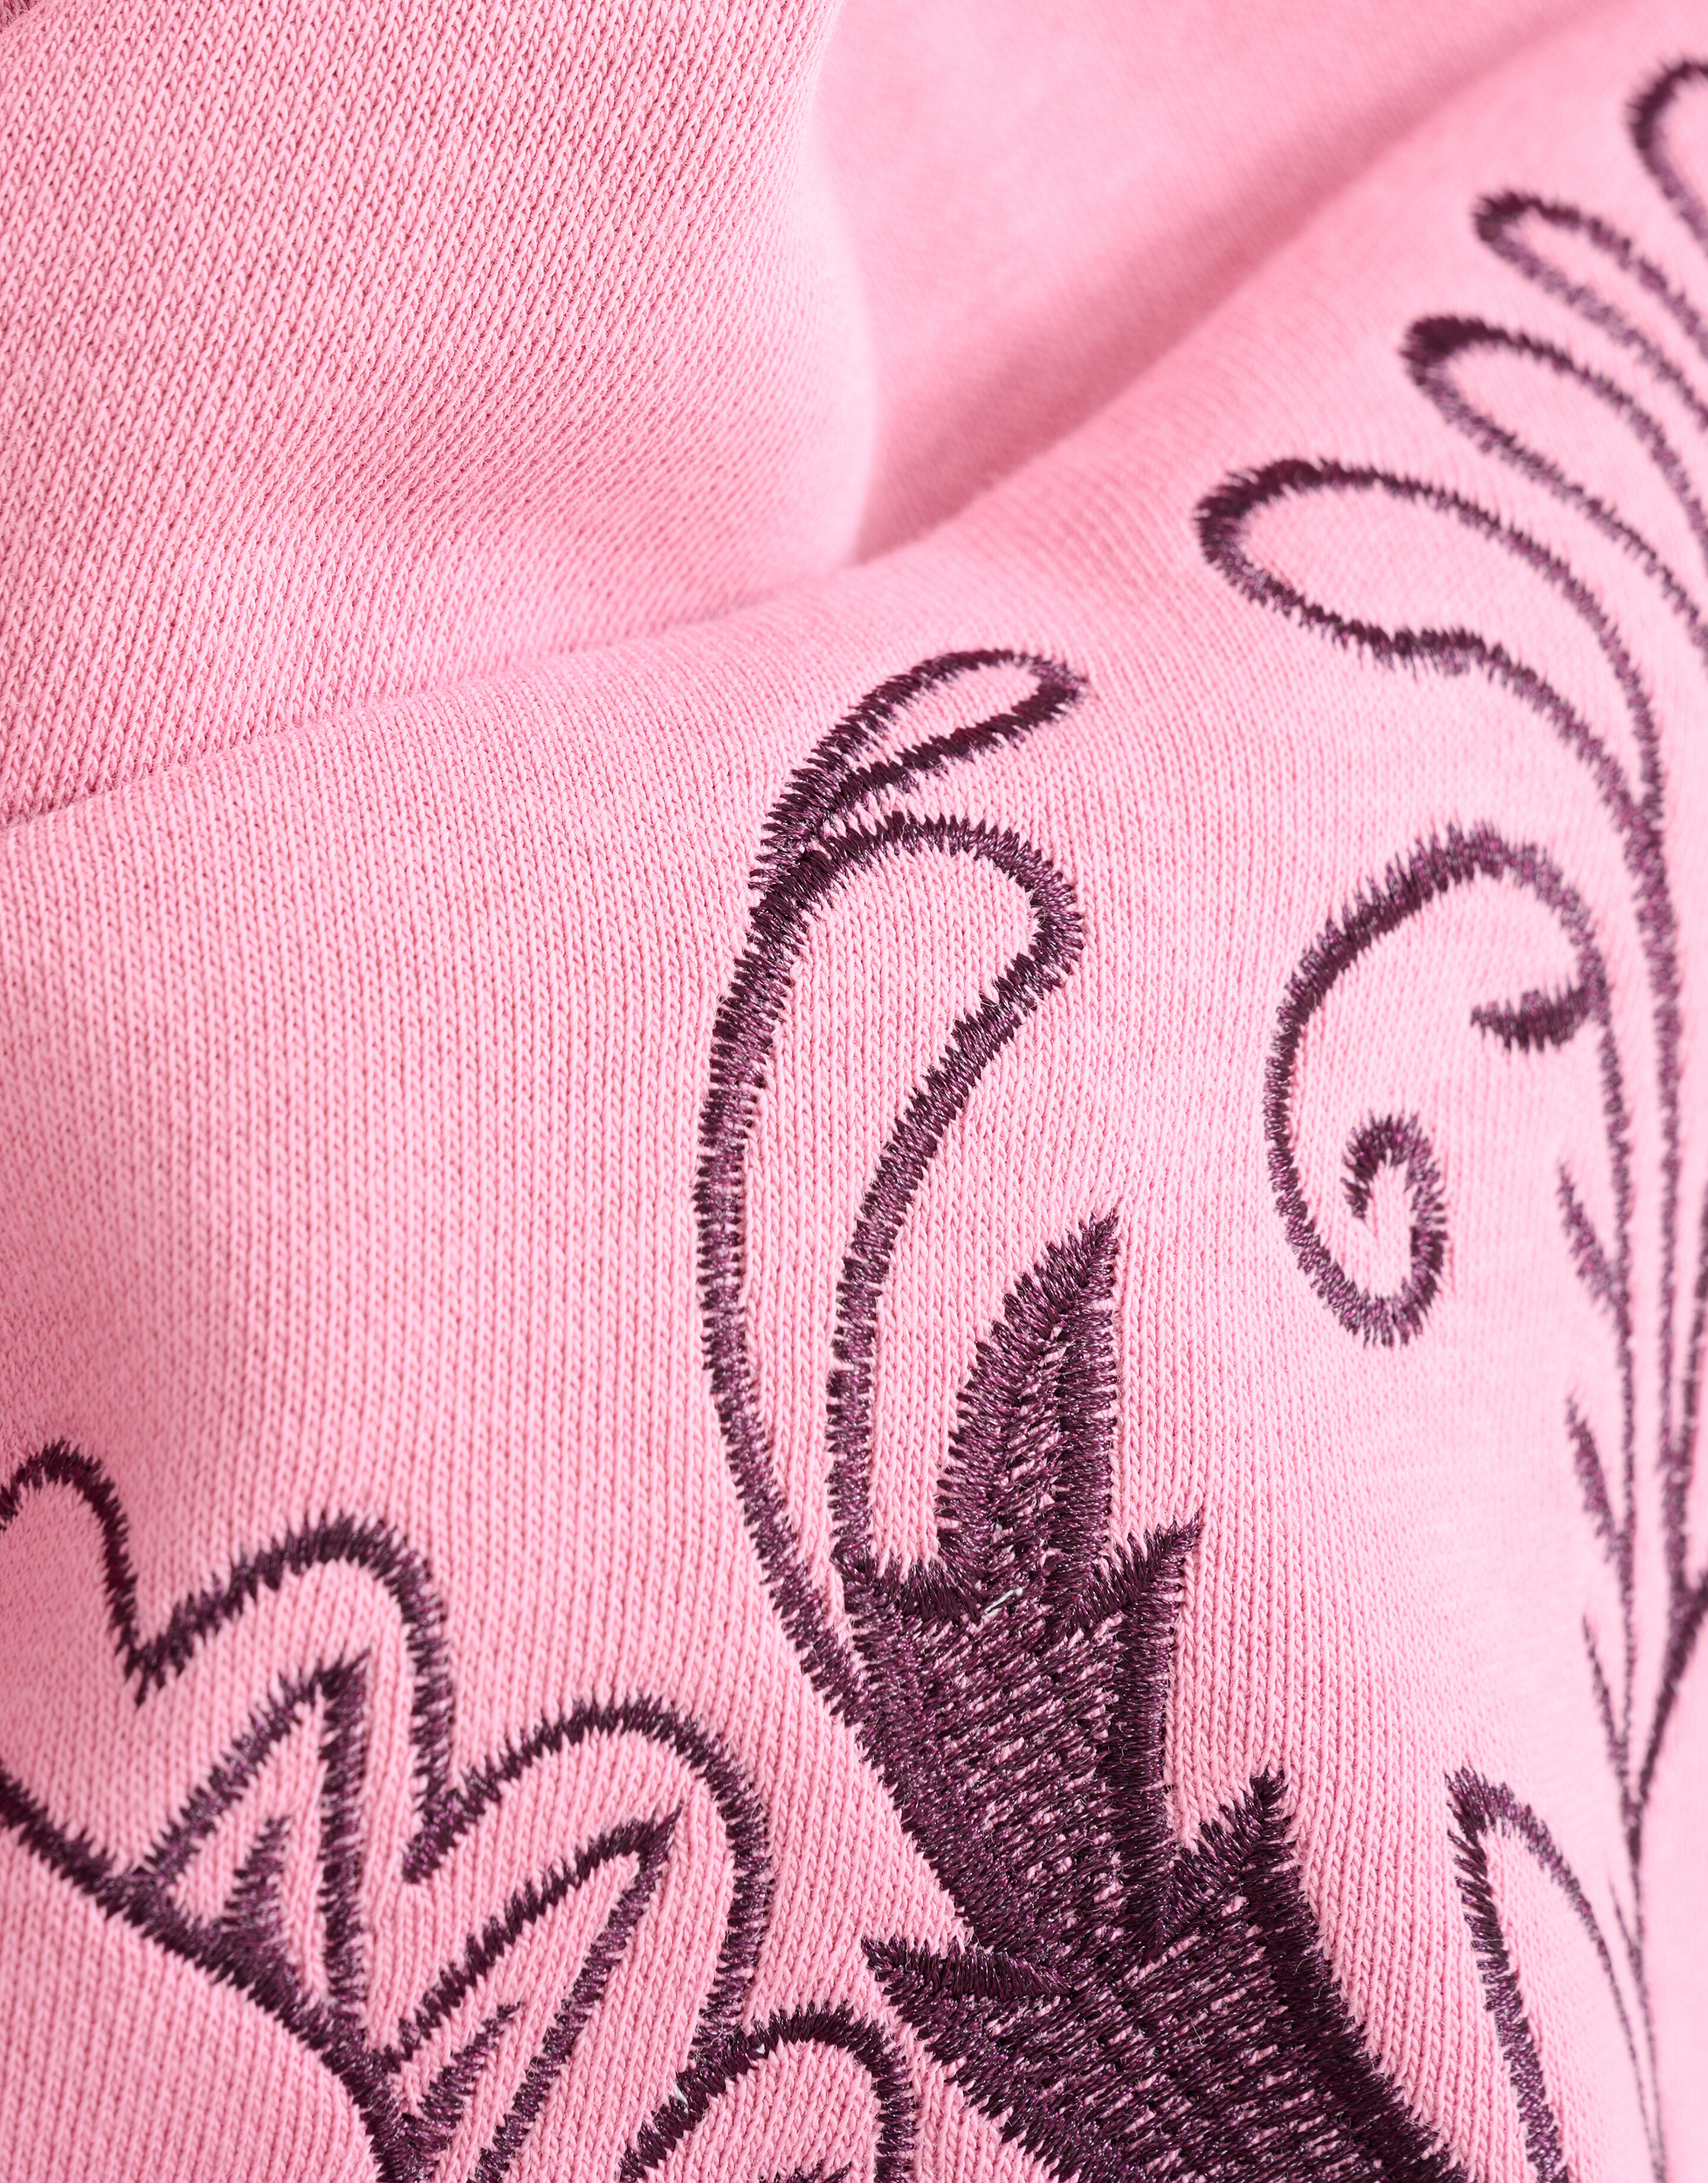 Embroidery Sweater Roze SHOEBY WOMEN